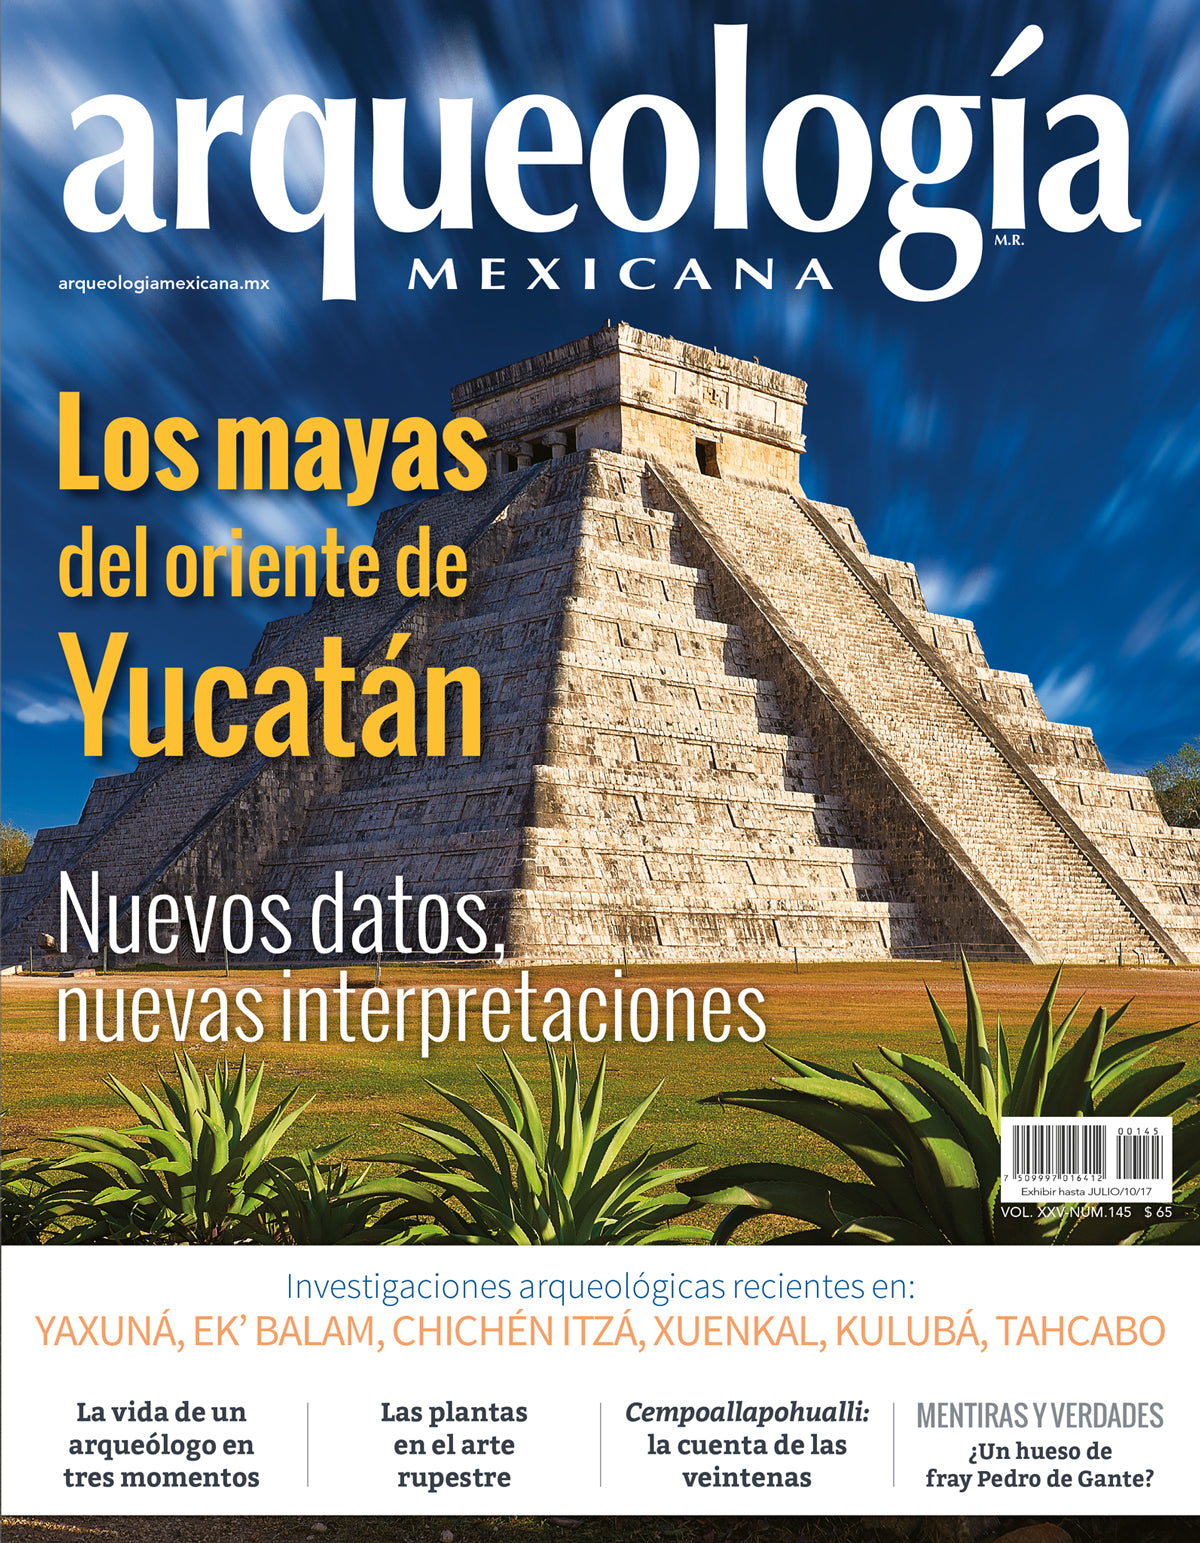 Los mayas del oriente de Yucatán